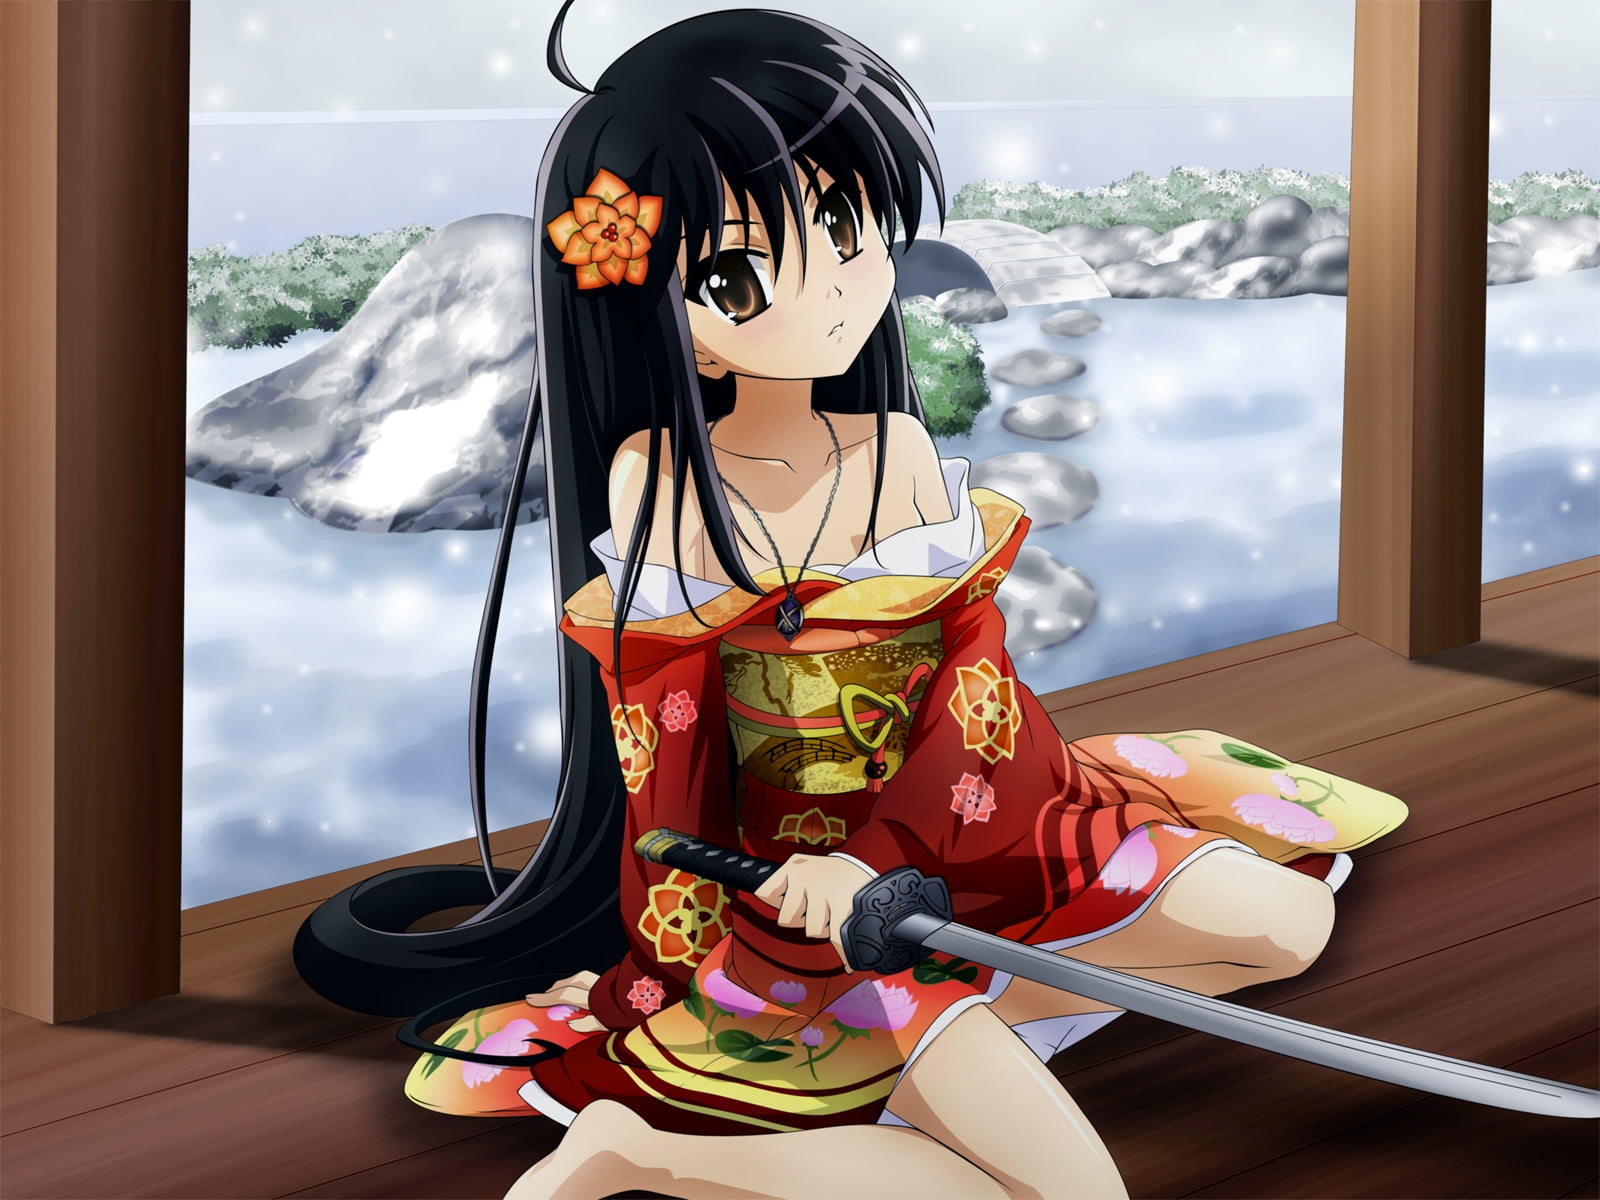 Anime girl illustration